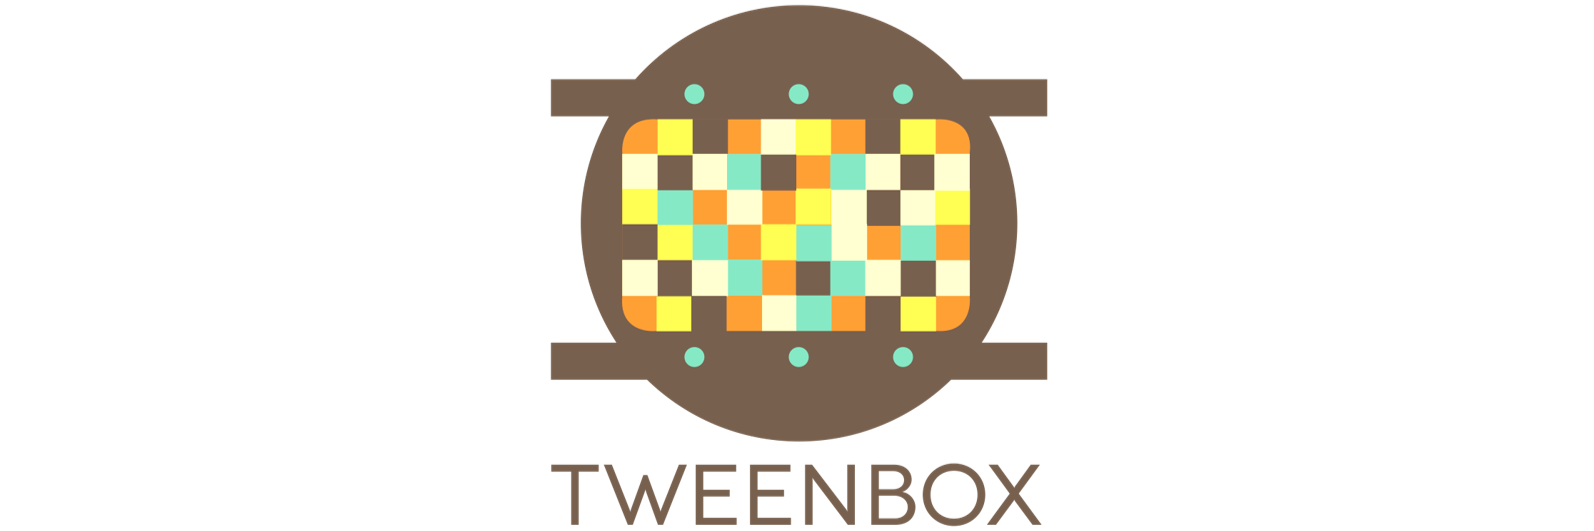 Tweenbox